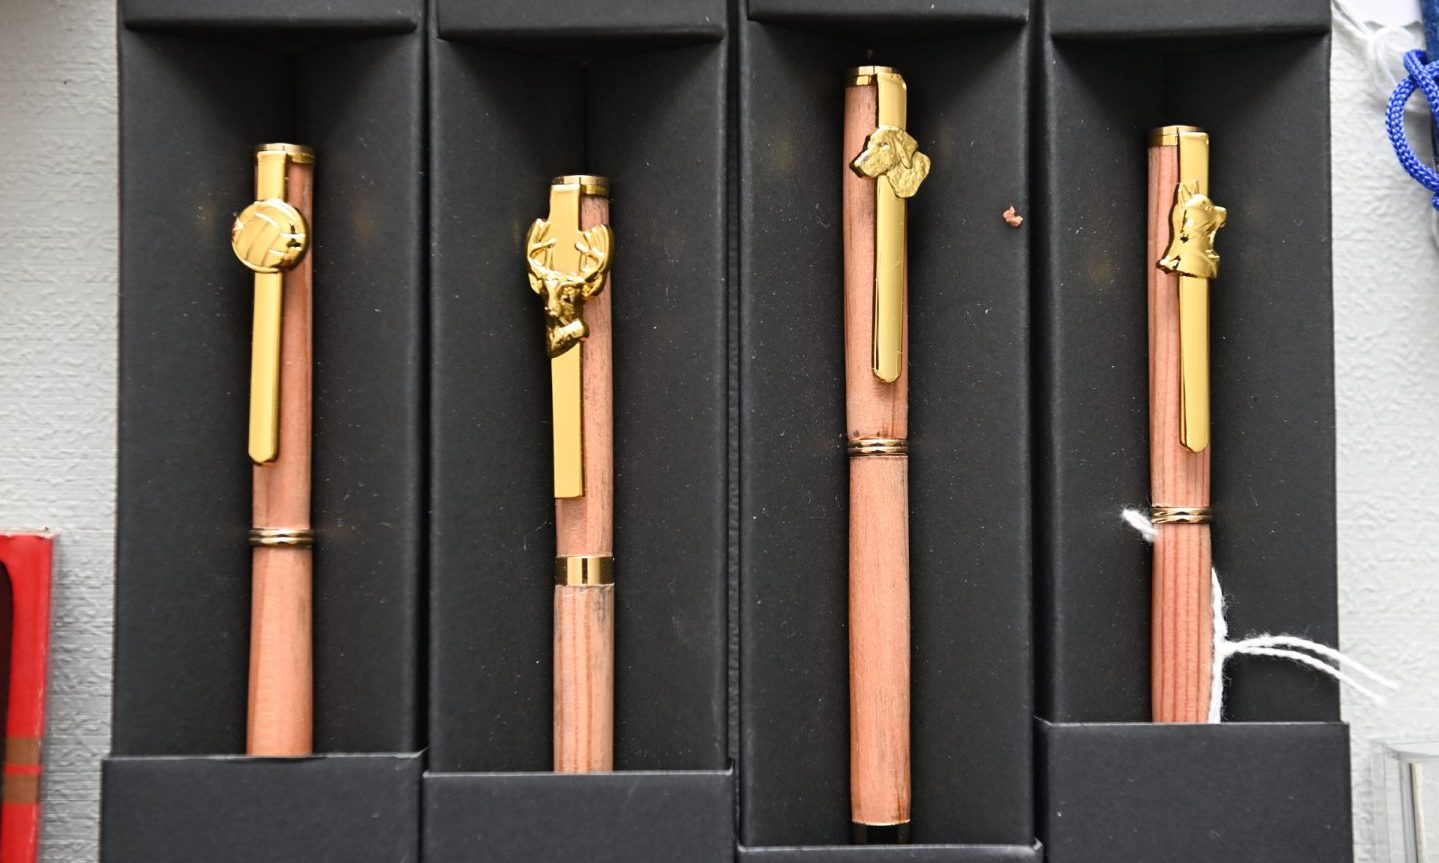 Wooden pens in cases. 